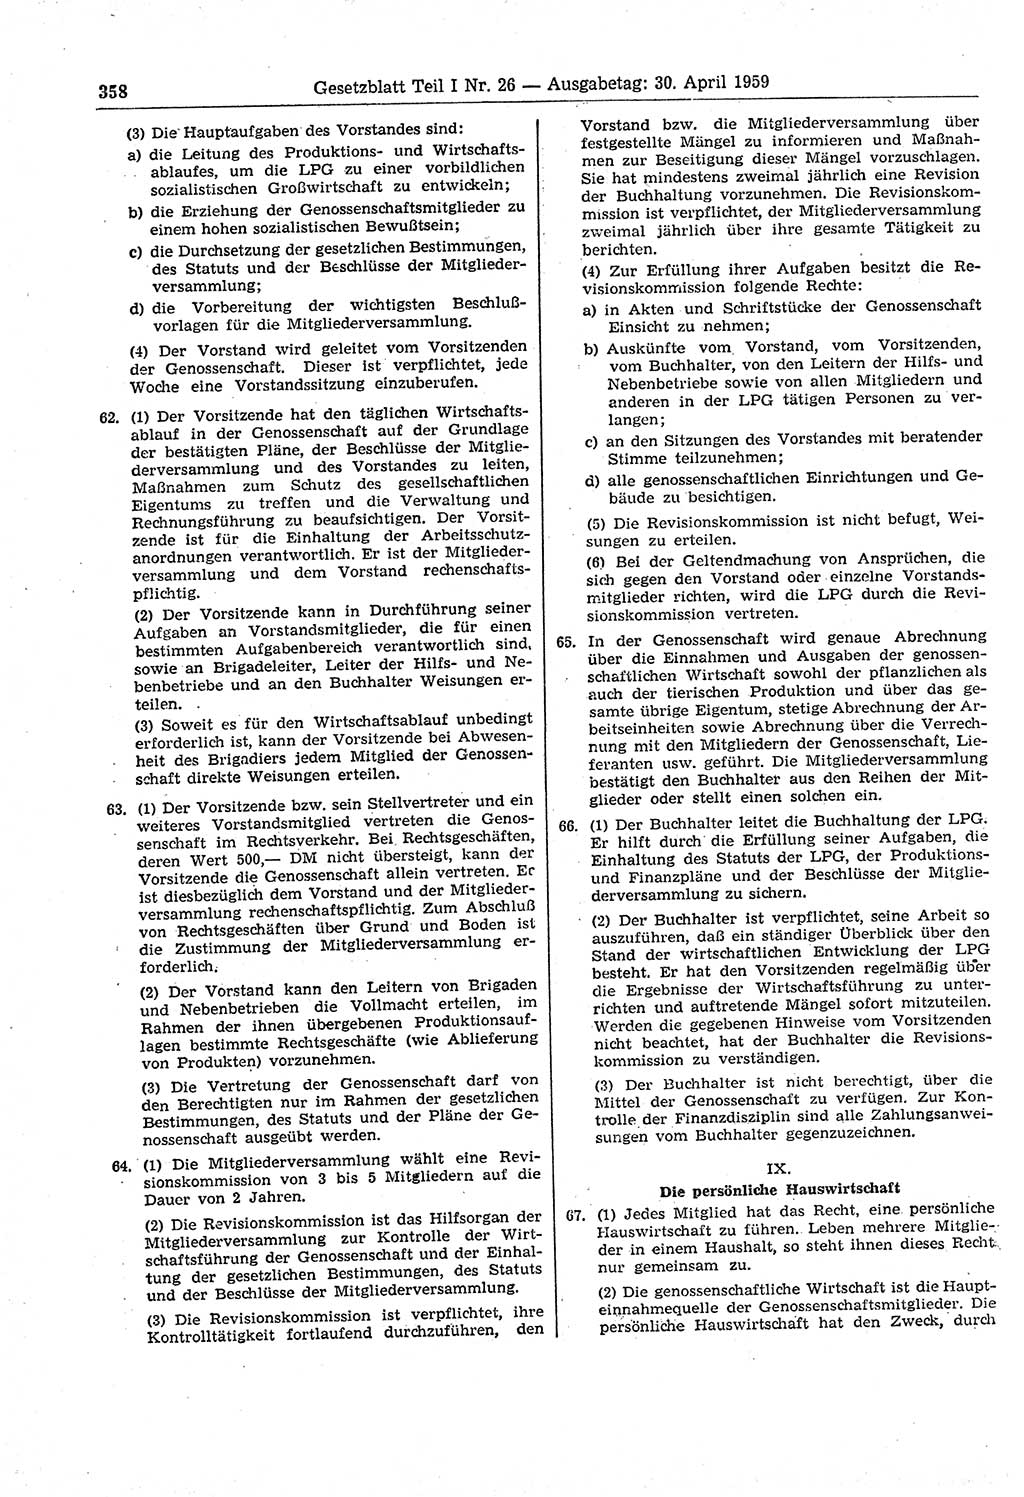 Gesetzblatt (GBl.) der Deutschen Demokratischen Republik (DDR) Teil Ⅰ 1959, Seite 358 (GBl. DDR Ⅰ 1959, S. 358)